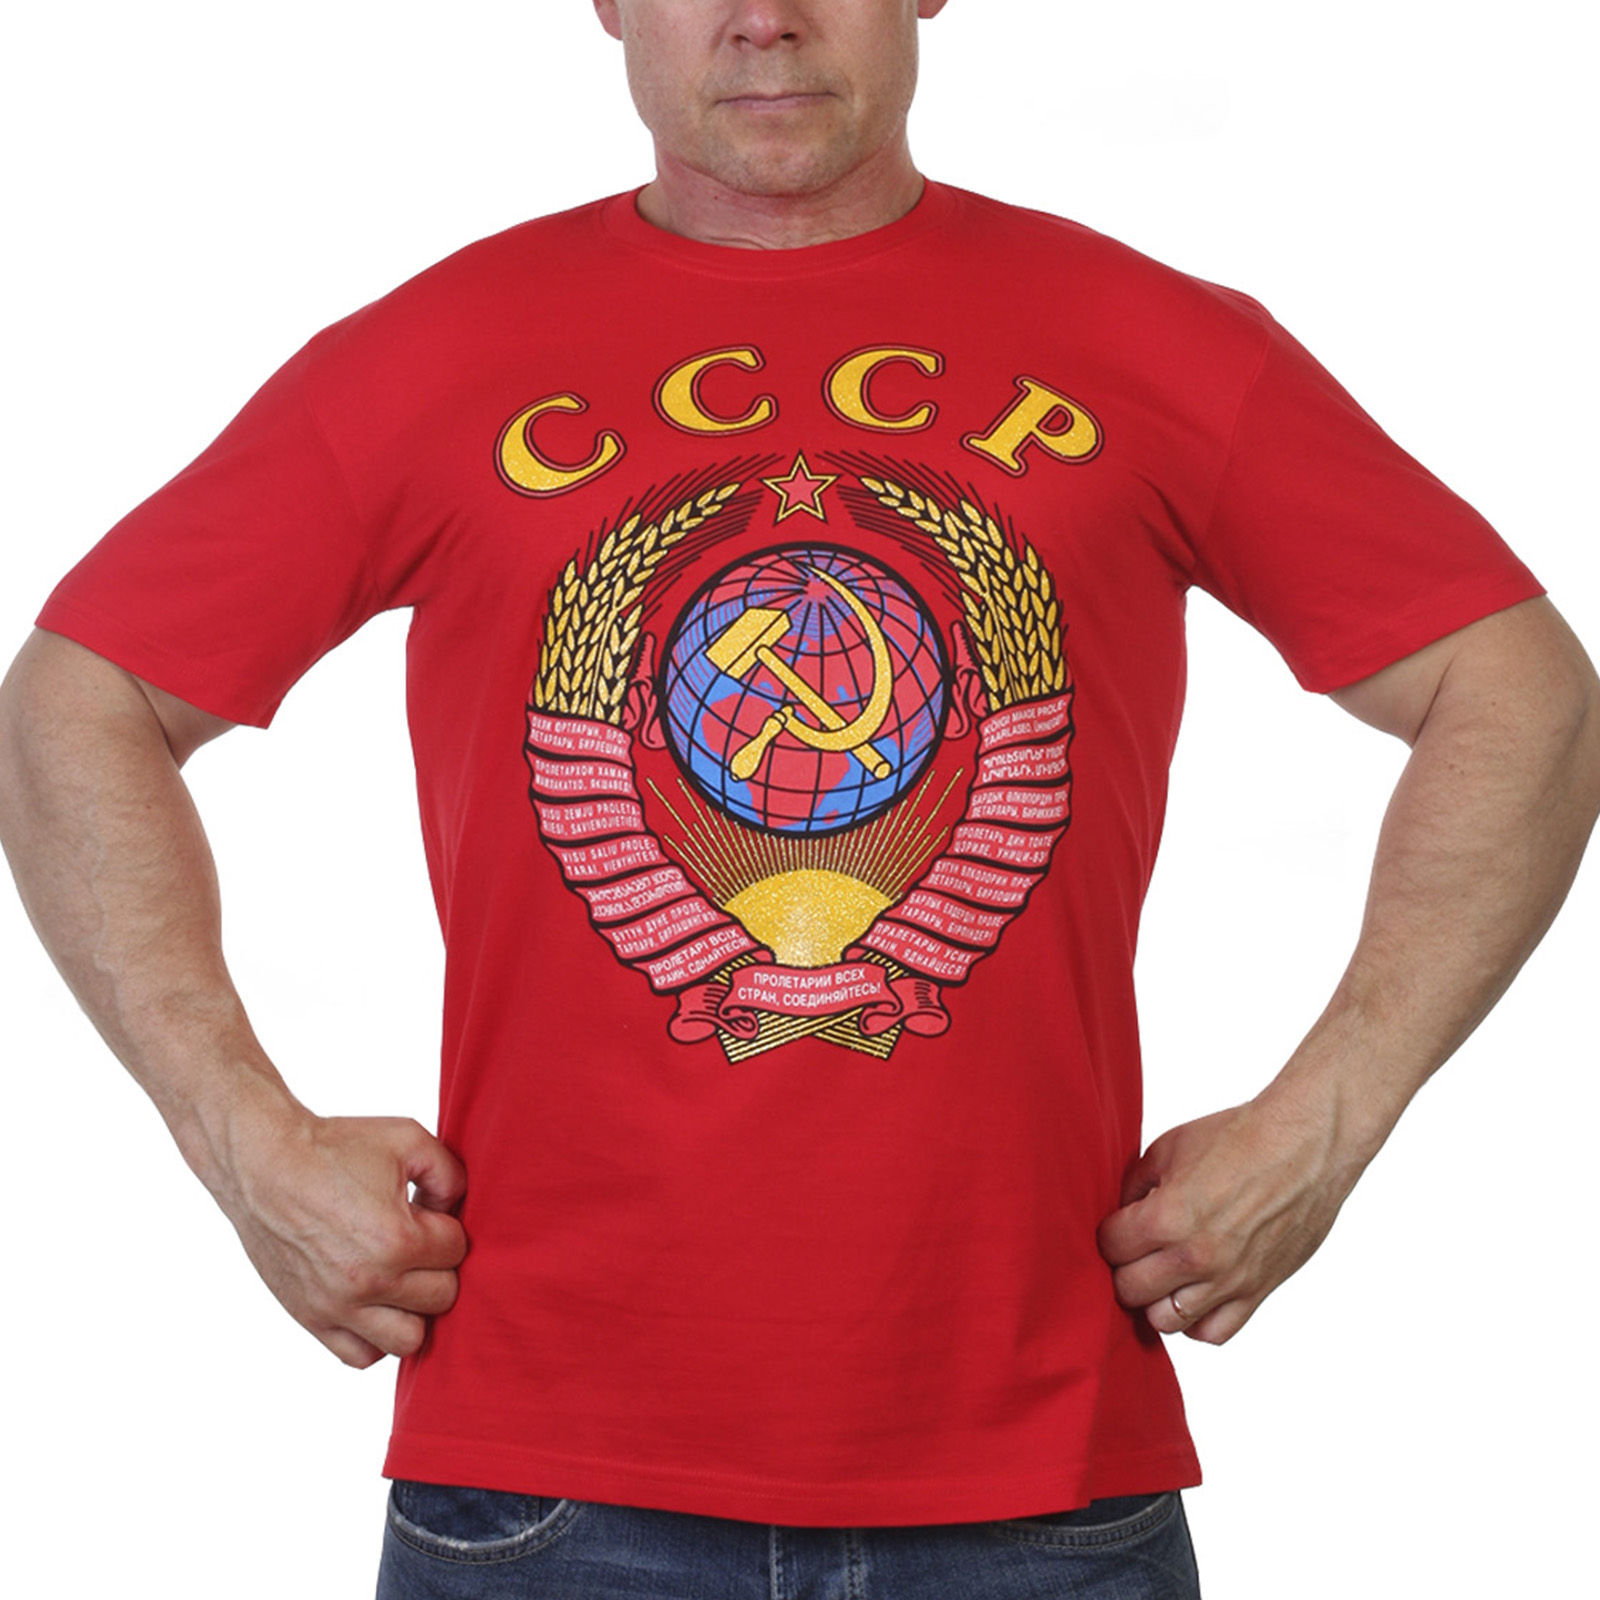 Купить фтболку с надписью и гербом СССР по лучшей цене